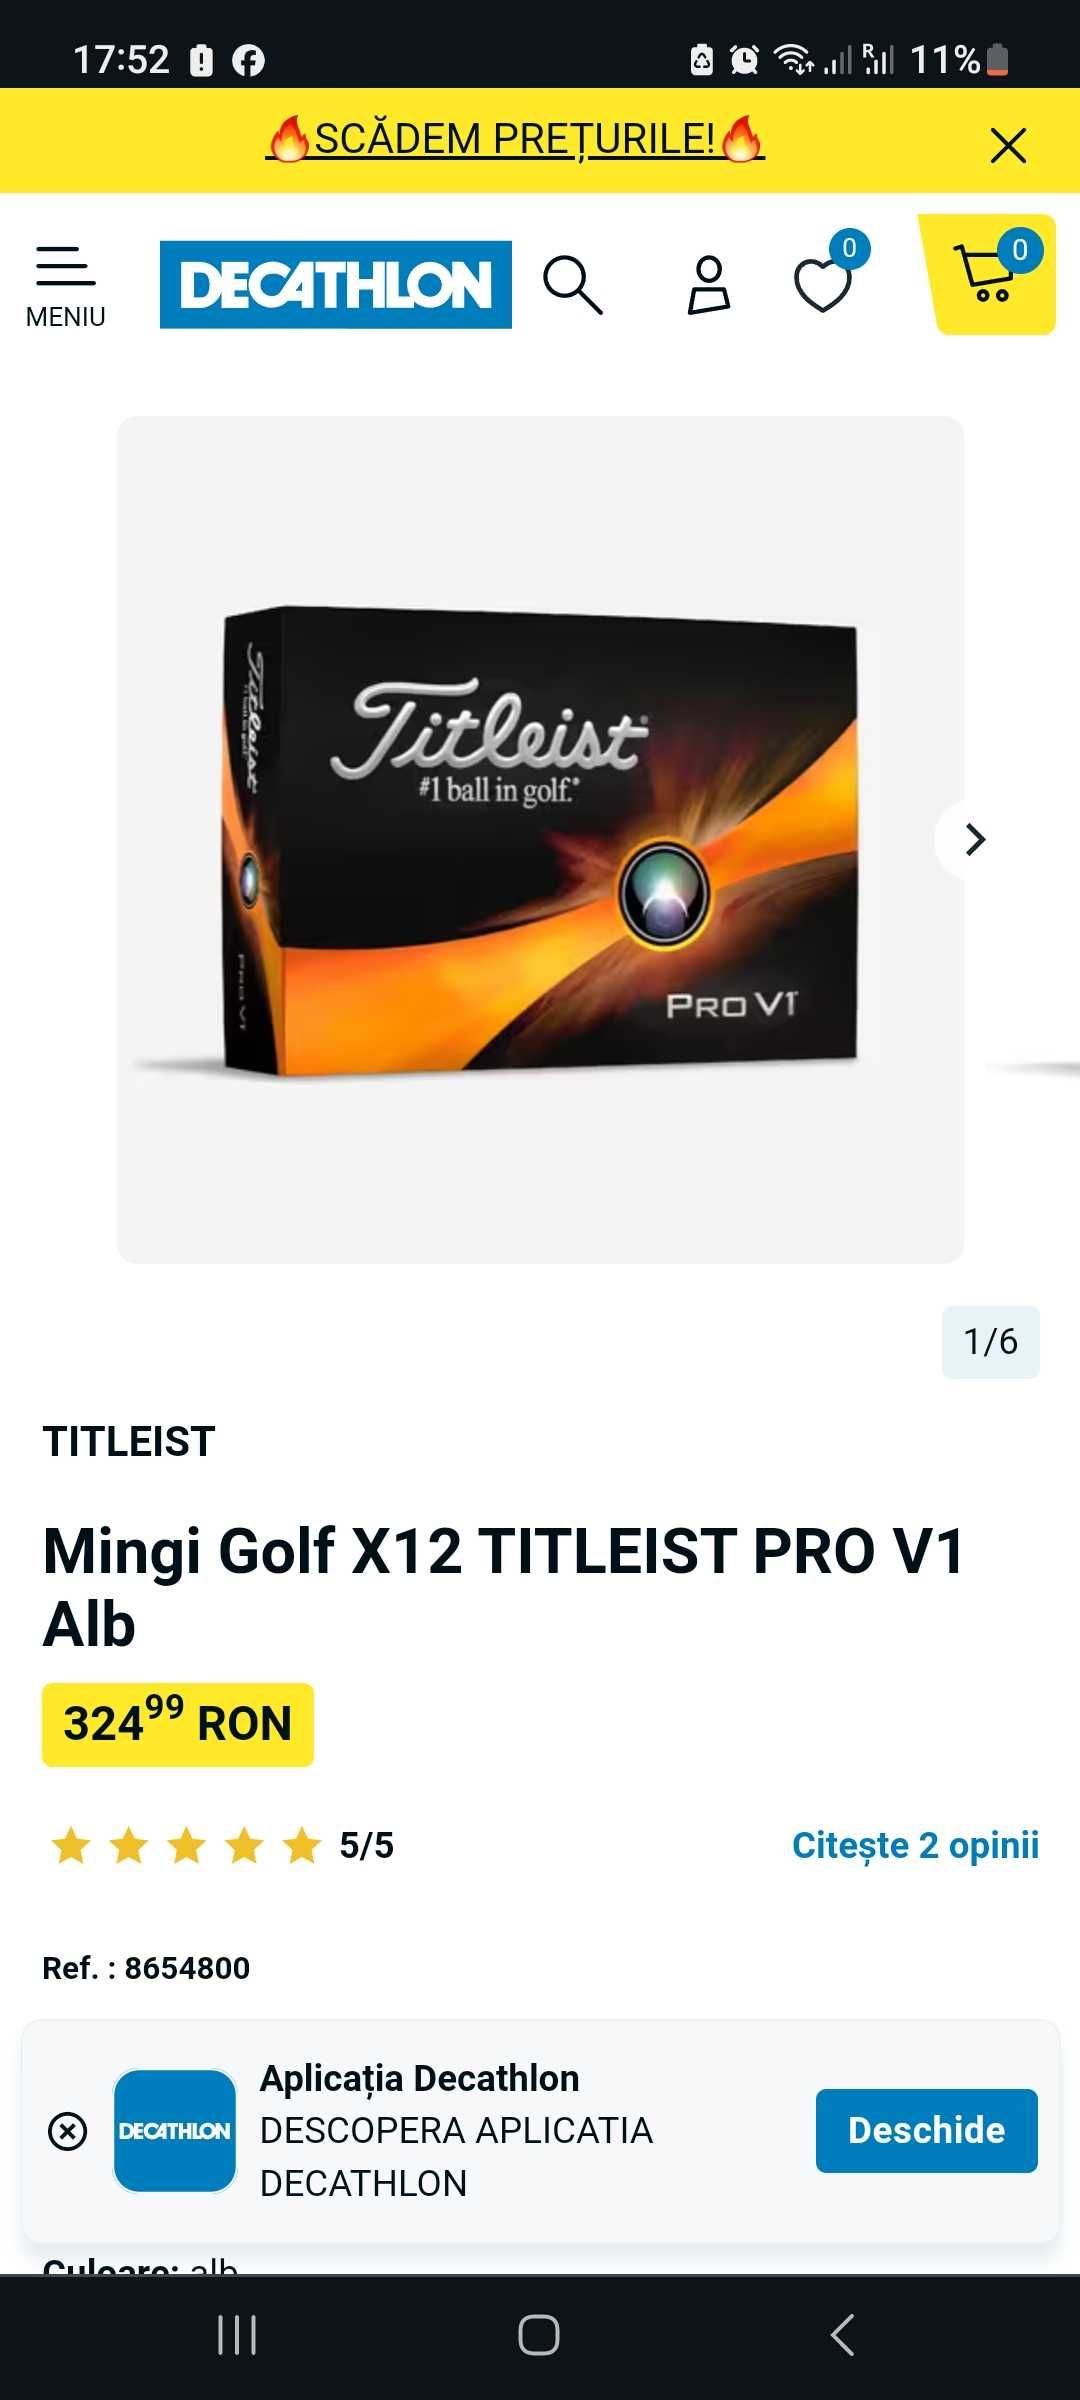 Mingii de golf premium Titleist Prov1, Prov1x